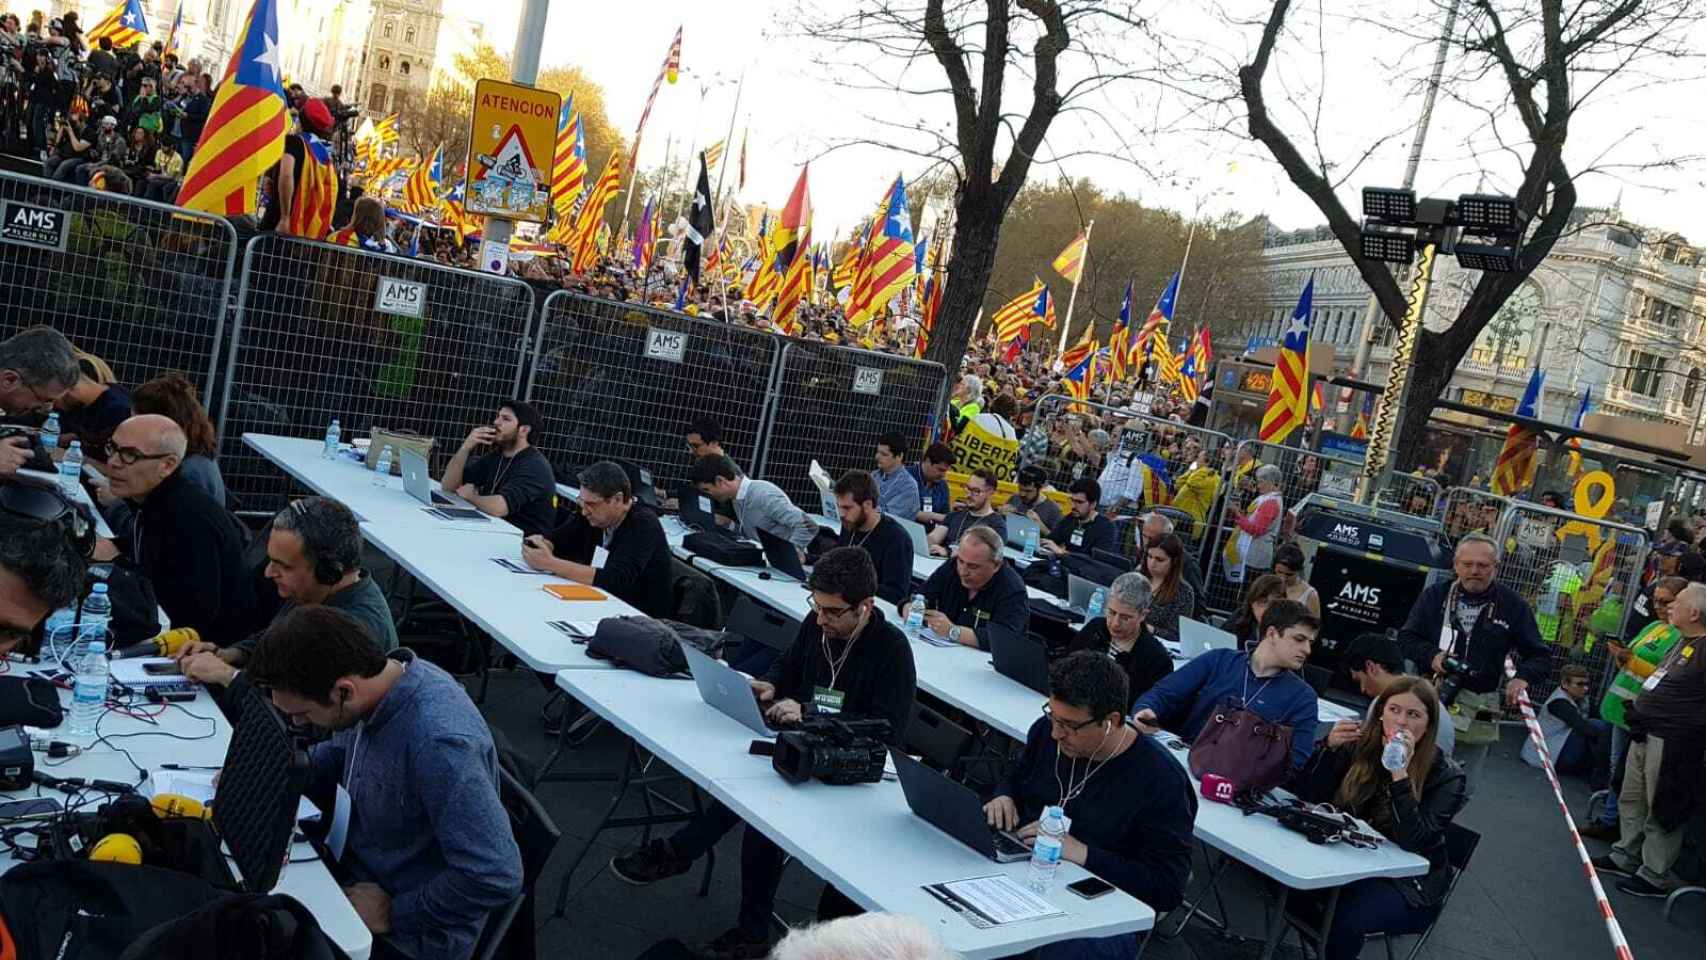 Los separatistas se manifiestan en Madrid contra el Estado opresor.Puestos de prensa en la marcha independentista de Madrid.